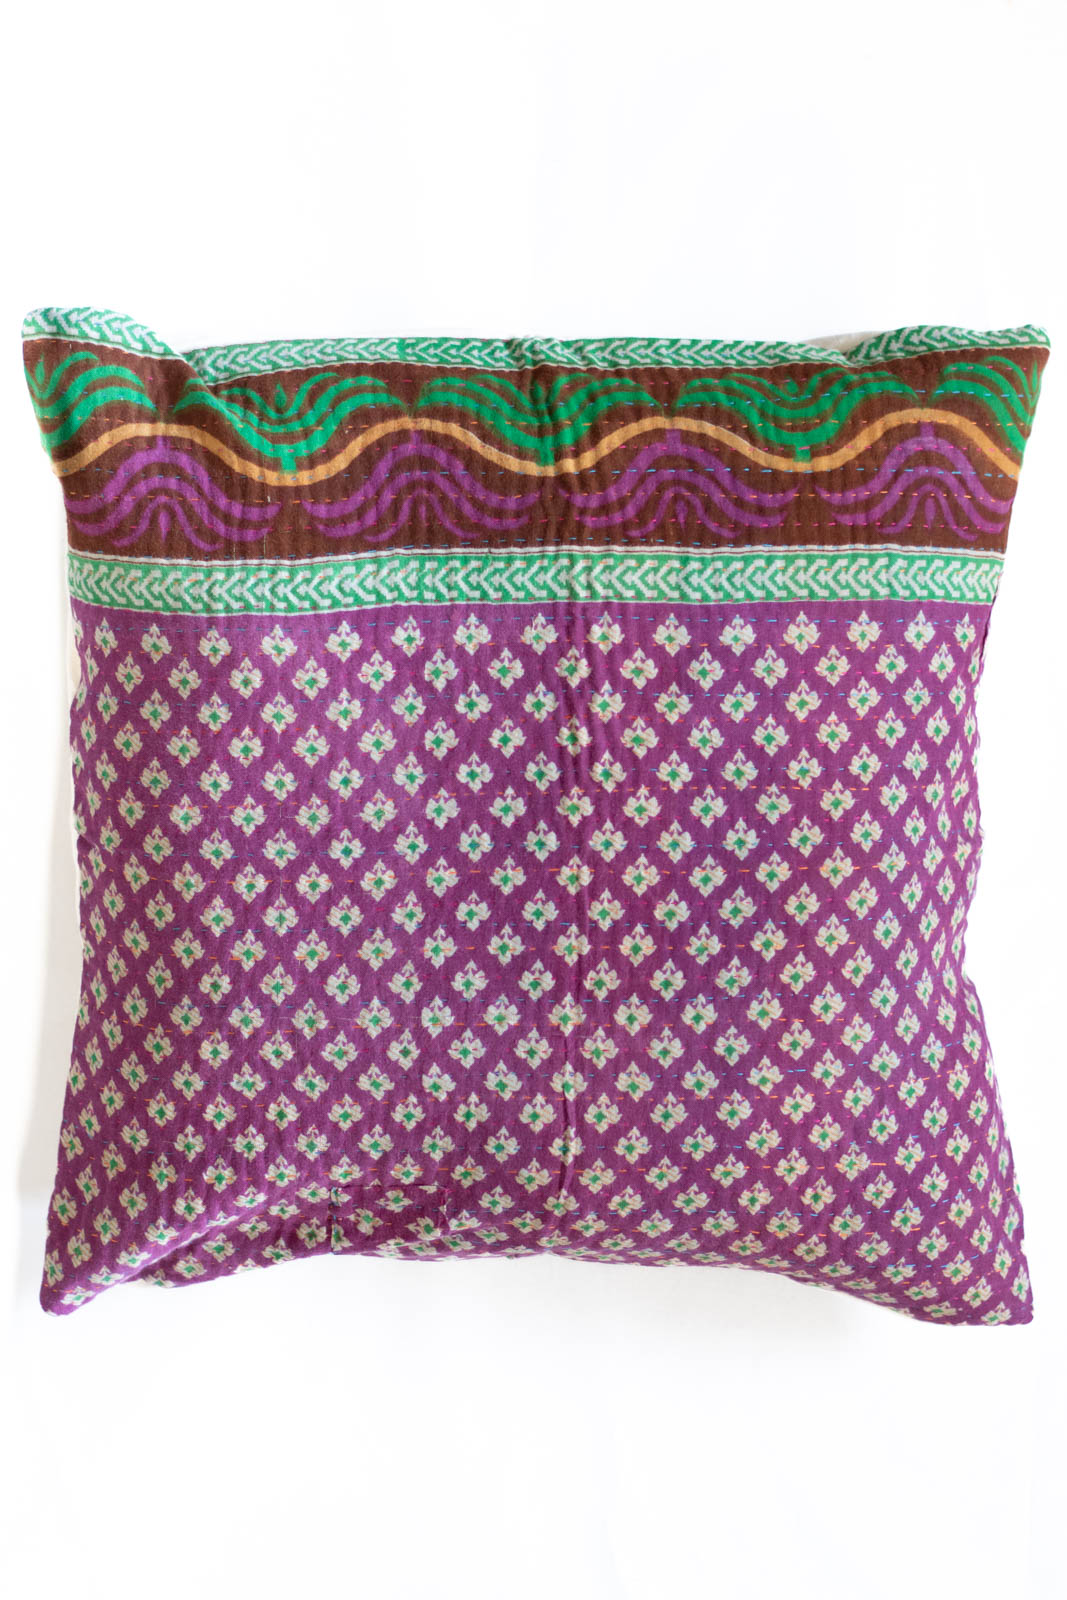 Unique no. 2 Kantha Pillow Cover